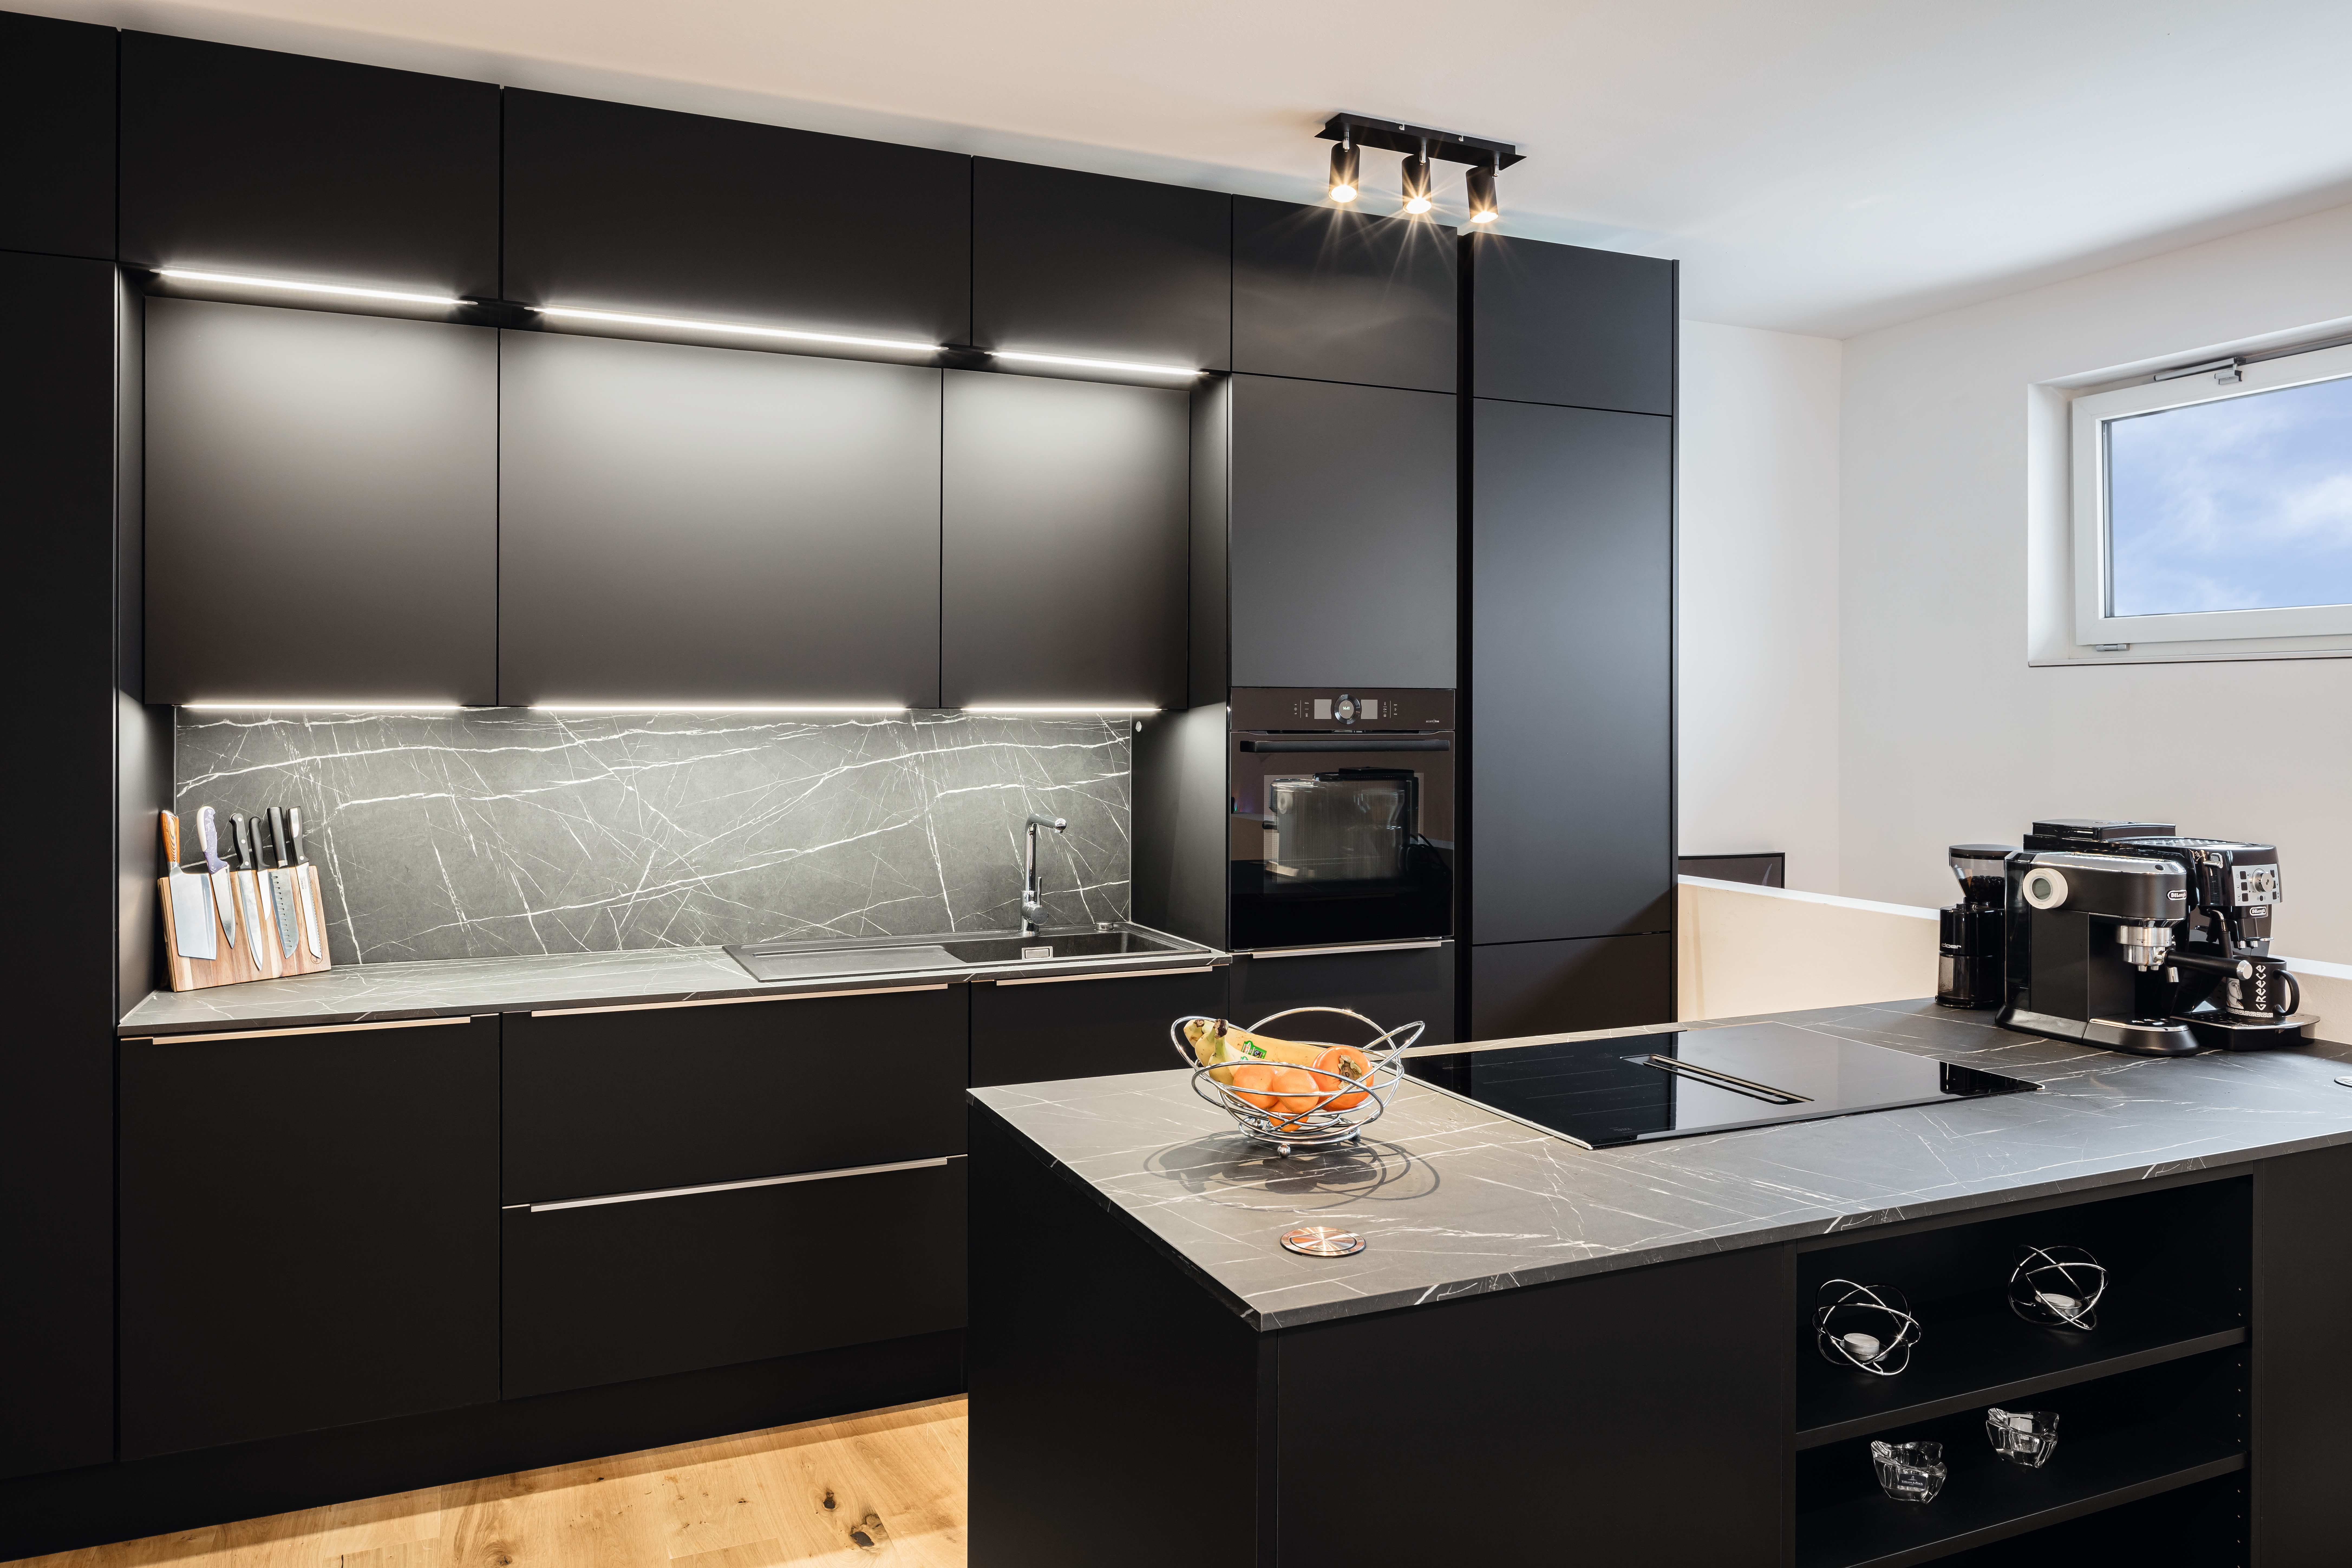 Architektonické studio Fuzzy's Woodart porušuje u designu této kuchyně tradici a používá trendovou černou barvu.